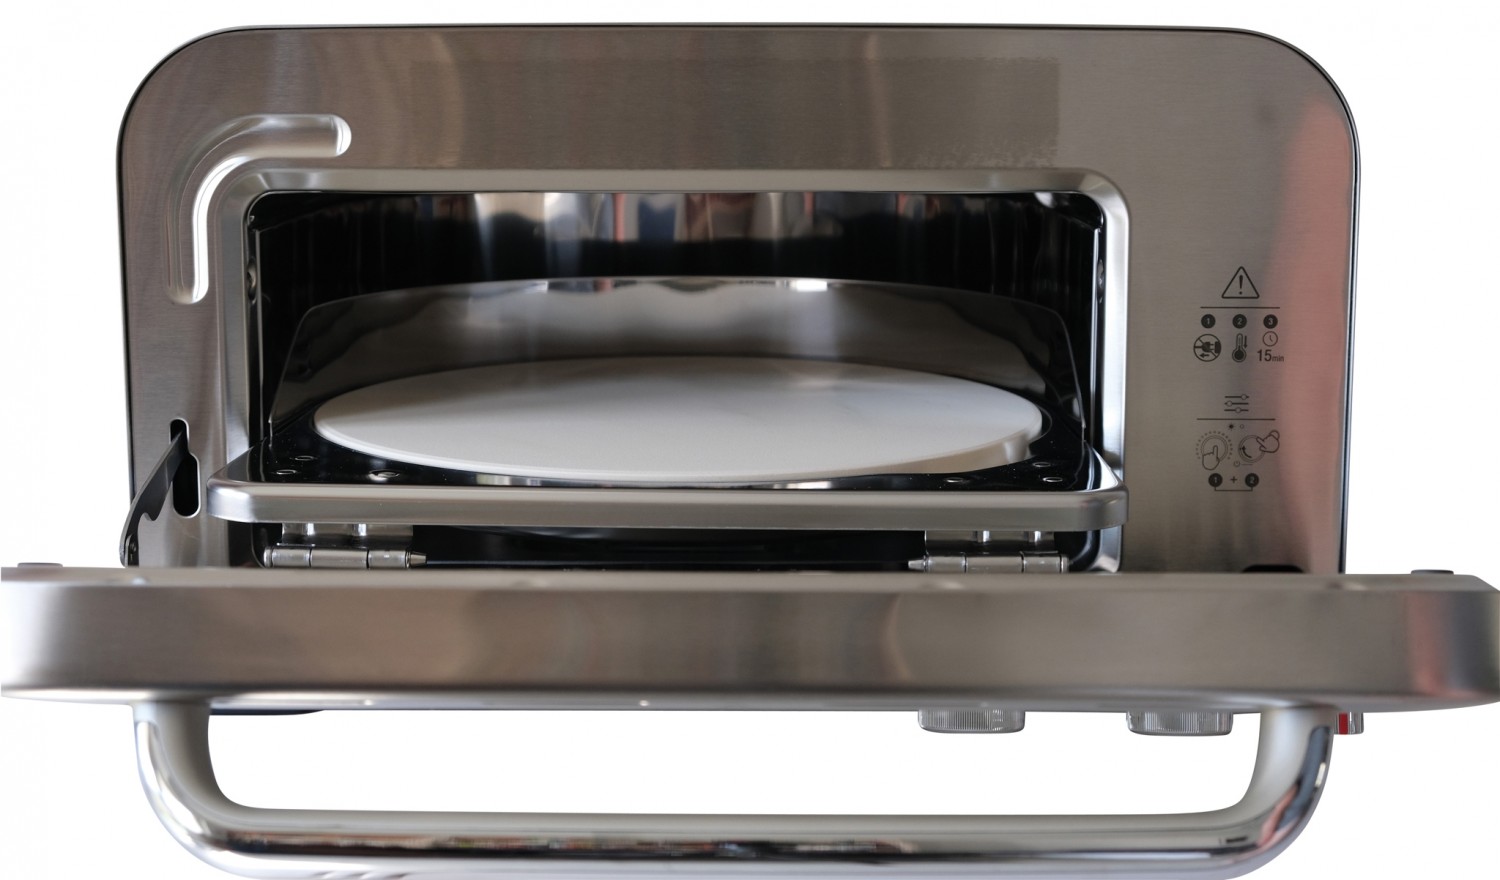 Pizzaofen Sage Smart Oven Pizzaiolo im Test, Bild 2